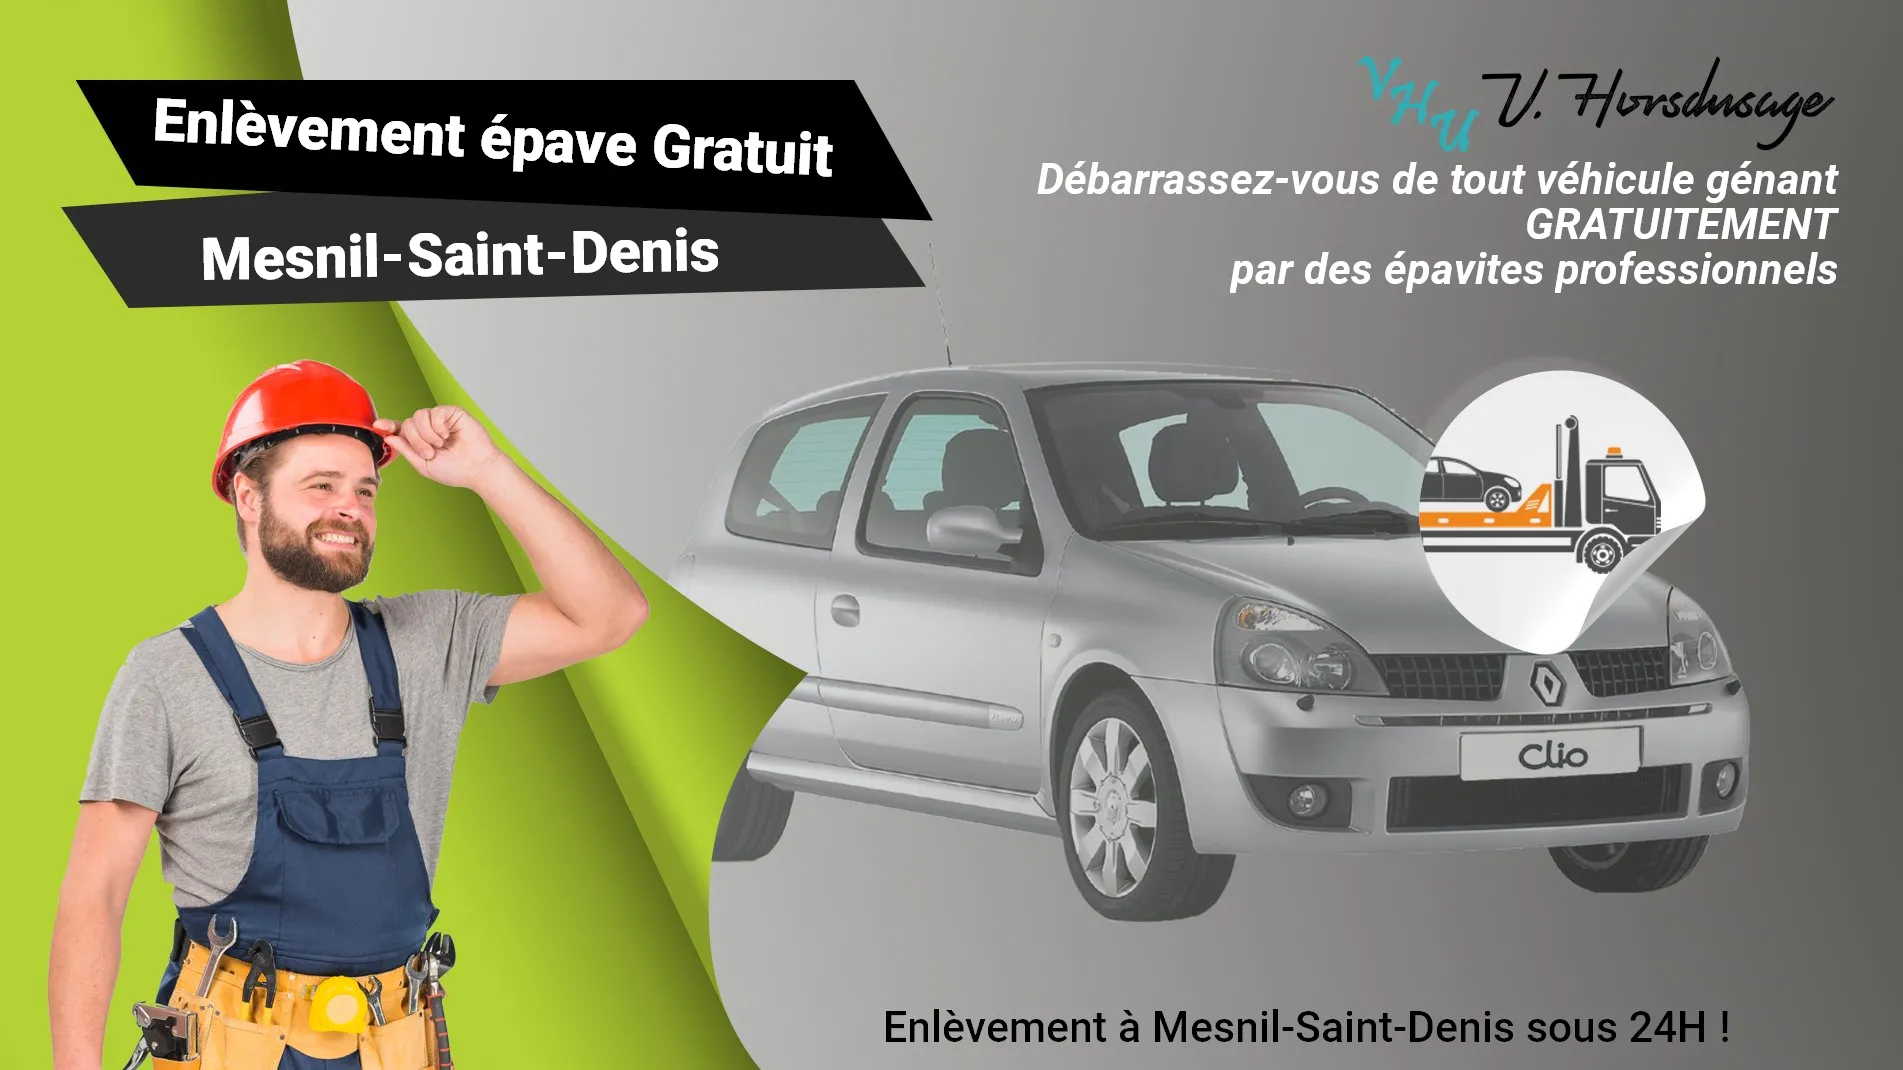 Pour un enlèvement gratuit à Mesnil-Saint-Denis, contactez nos épavistes agréé VHU